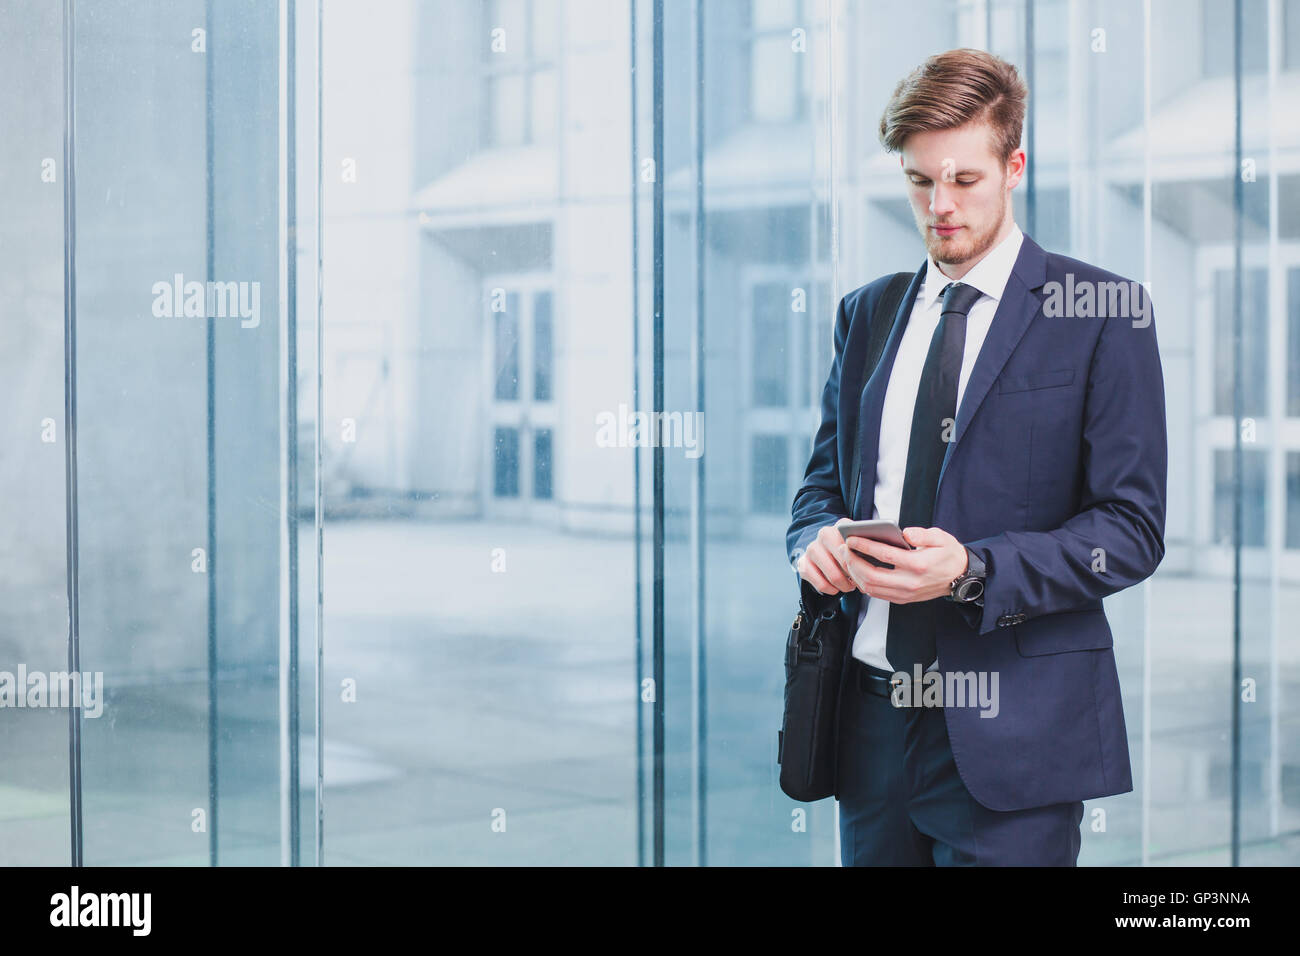 Businessman using smartphone près de l'immeuble de bureaux Banque D'Images